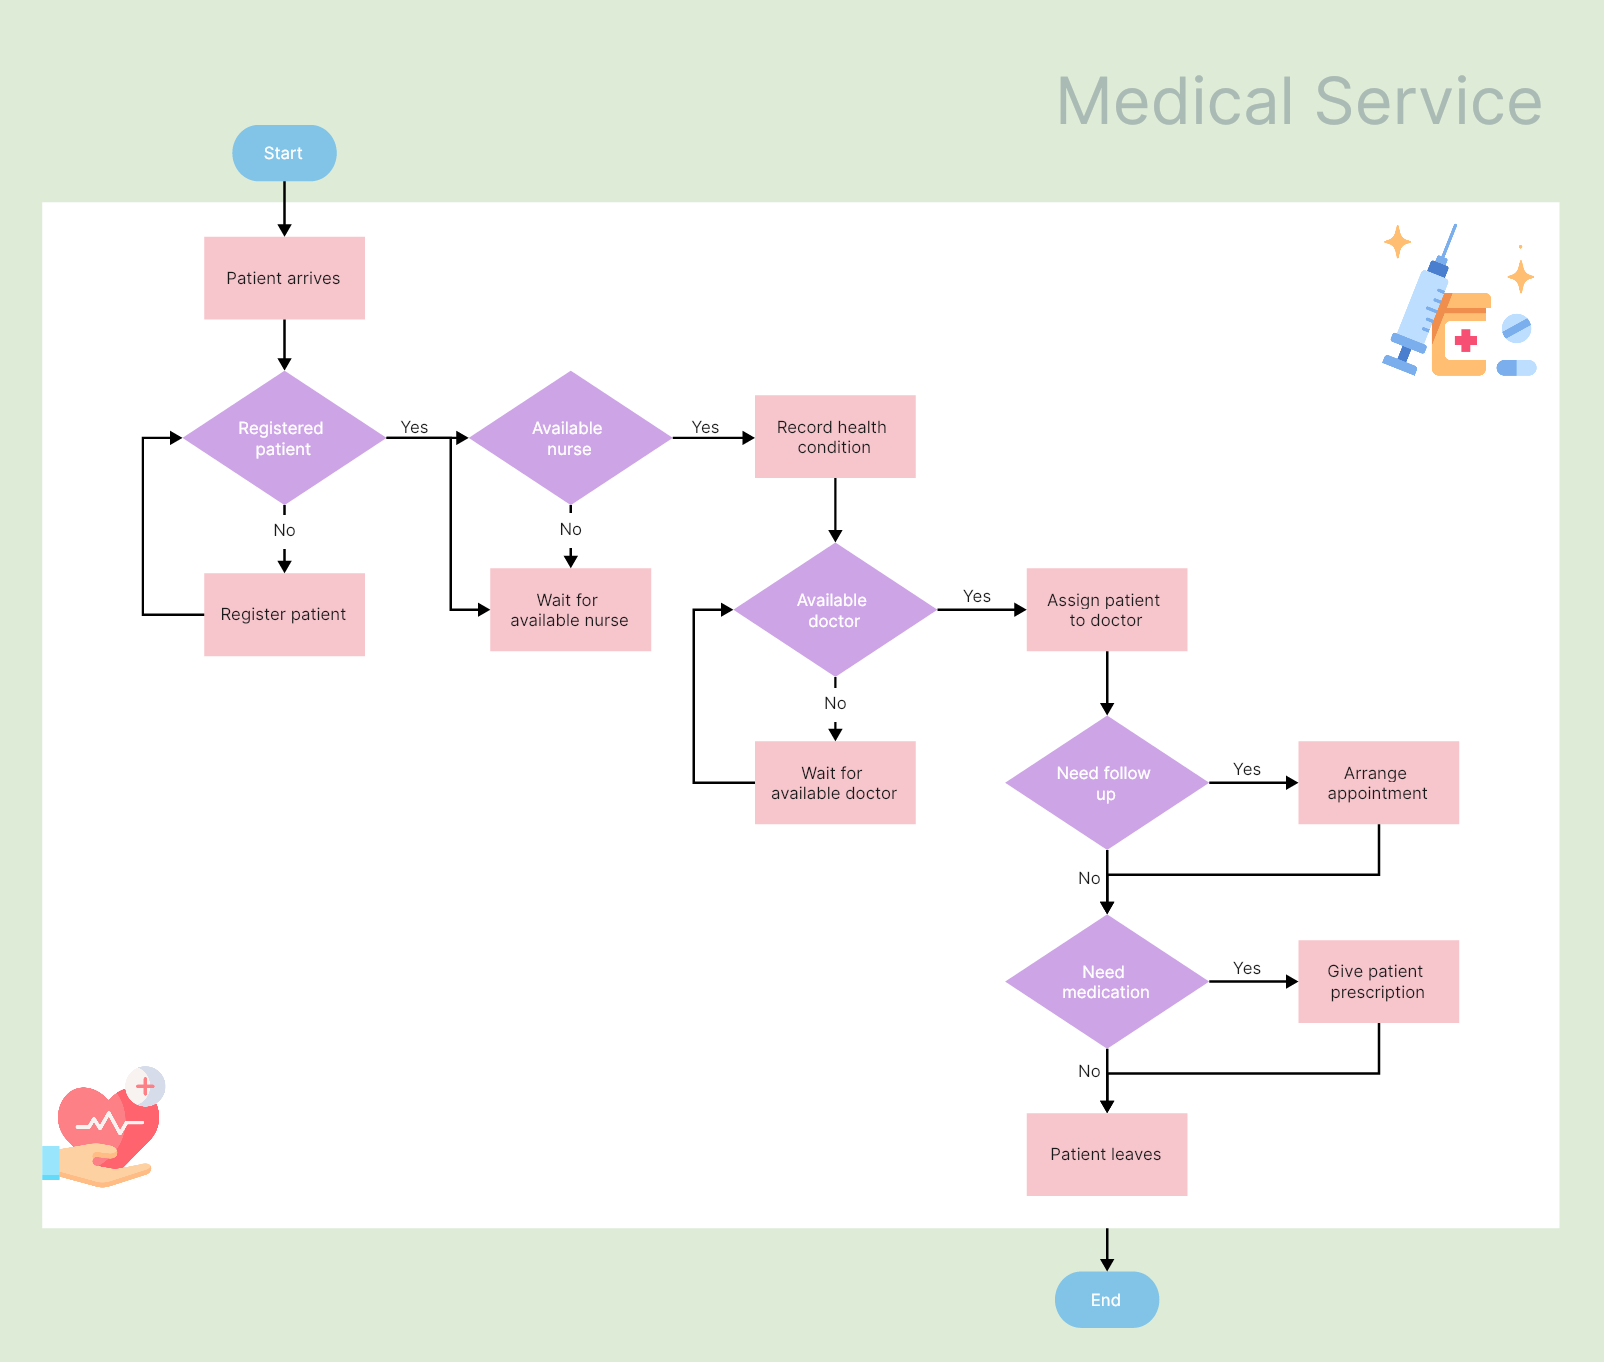 8. Diagrama de flujo del servicio médico